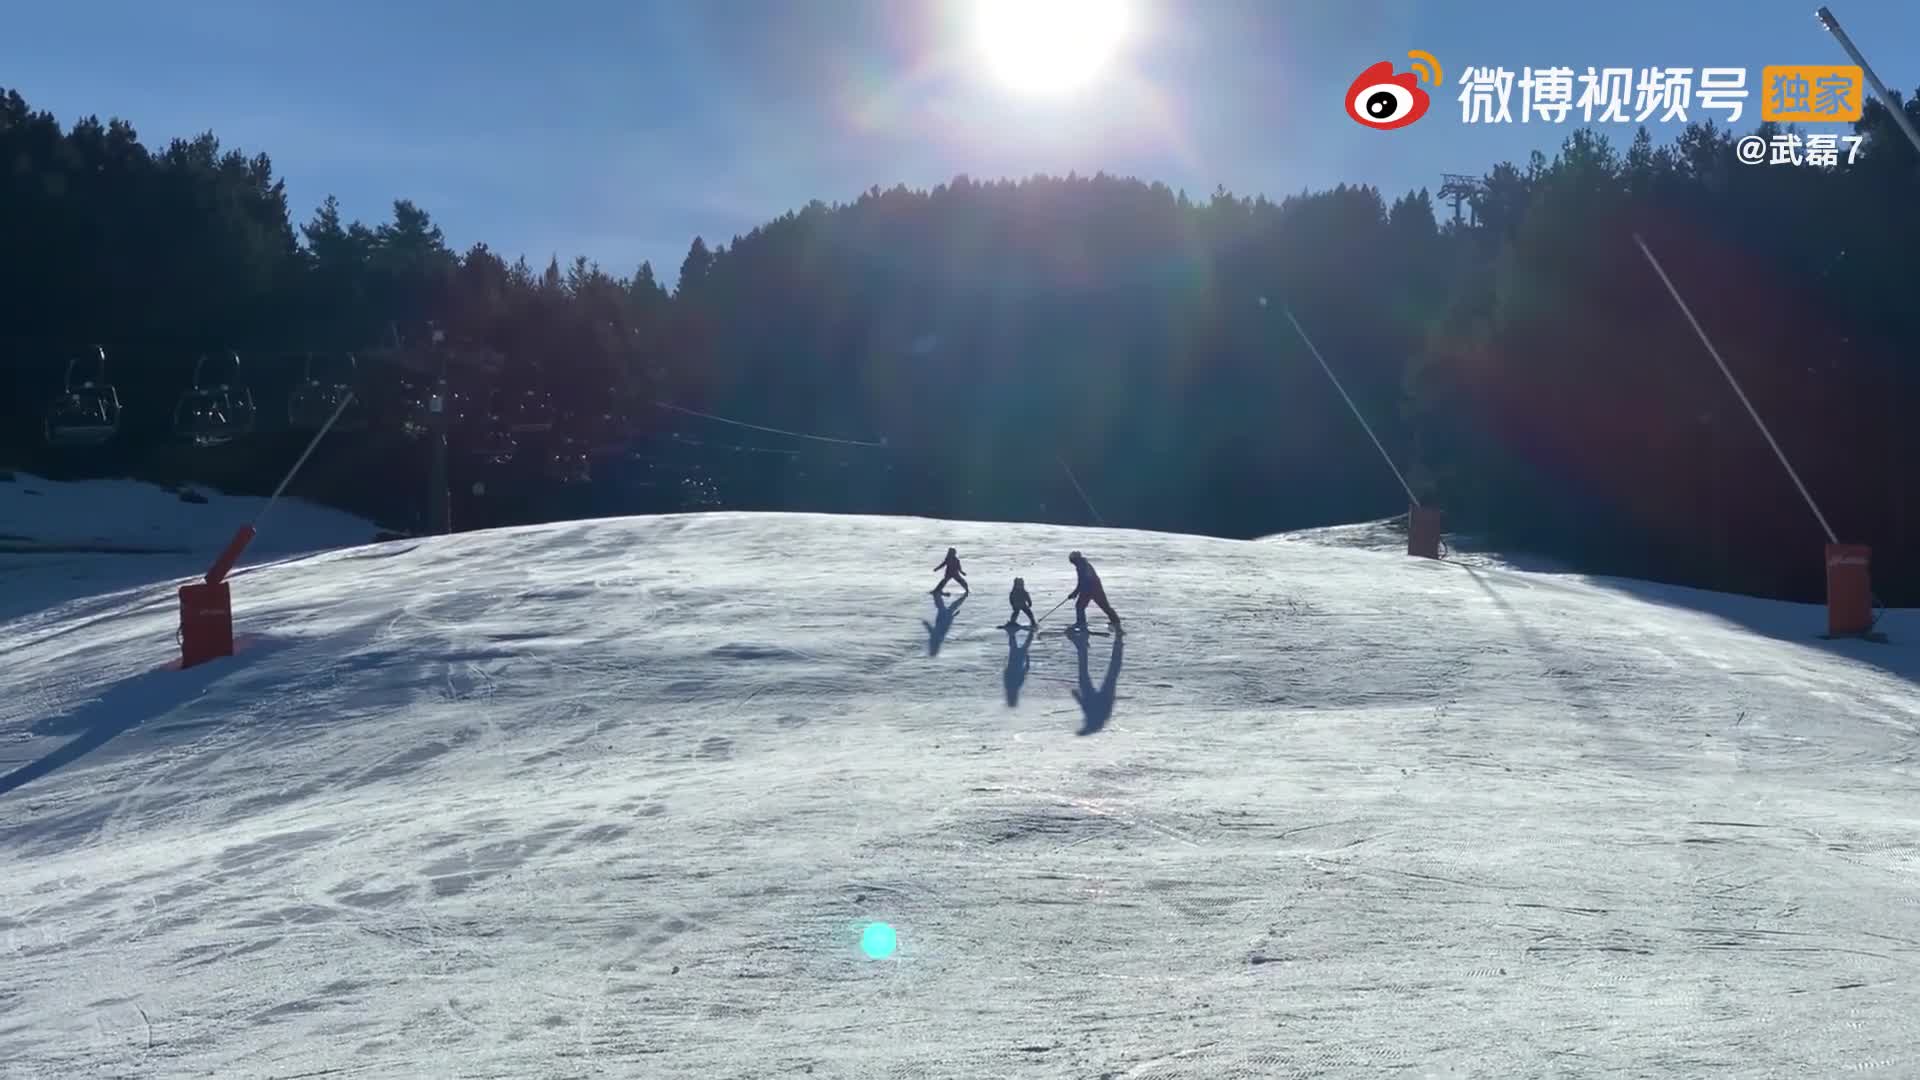 武磊晒与妻儿滑雪视频助力冬奥100天